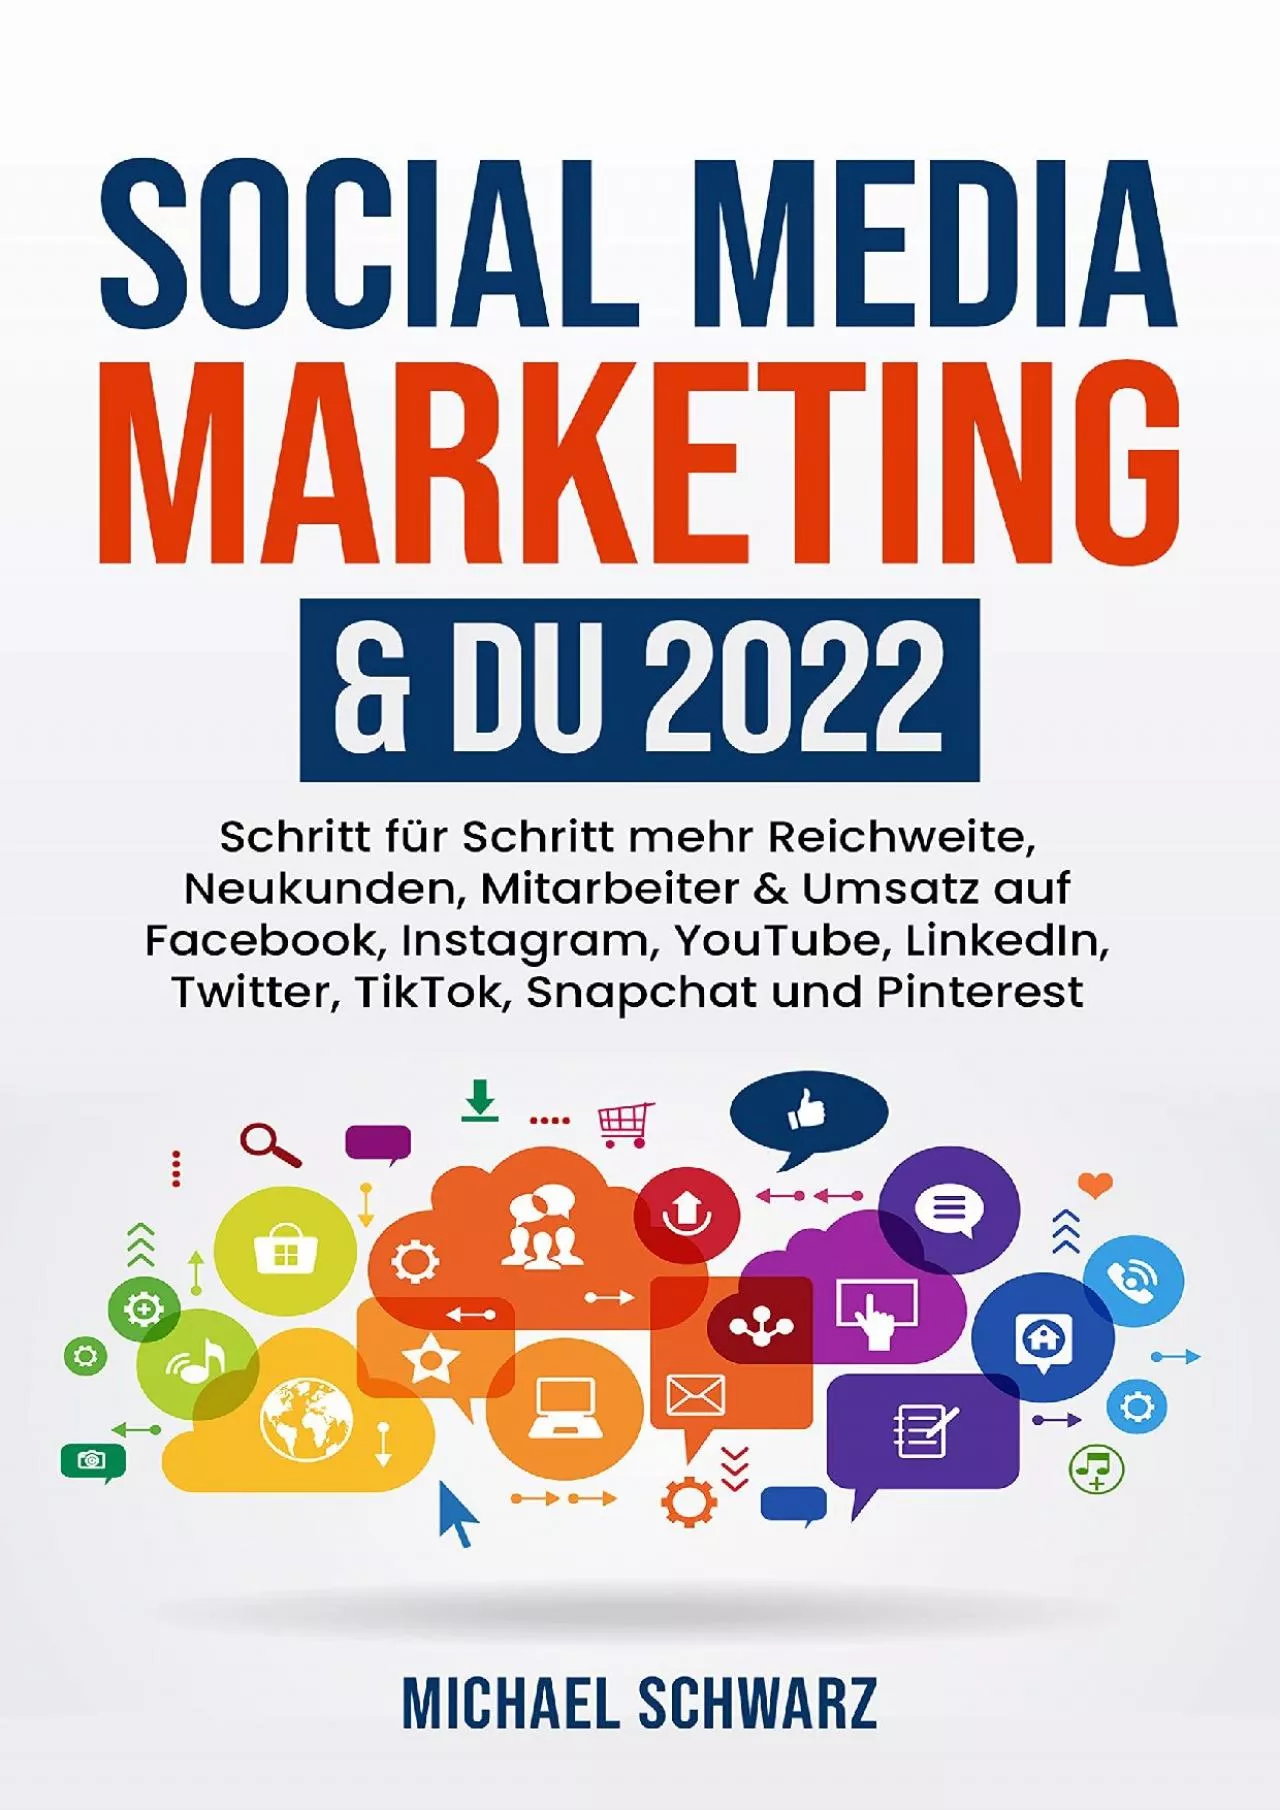 [FREE]-Social Media Marketing & DU 2022 Schritt für Schritt mehr Reichweite, Neukunden,